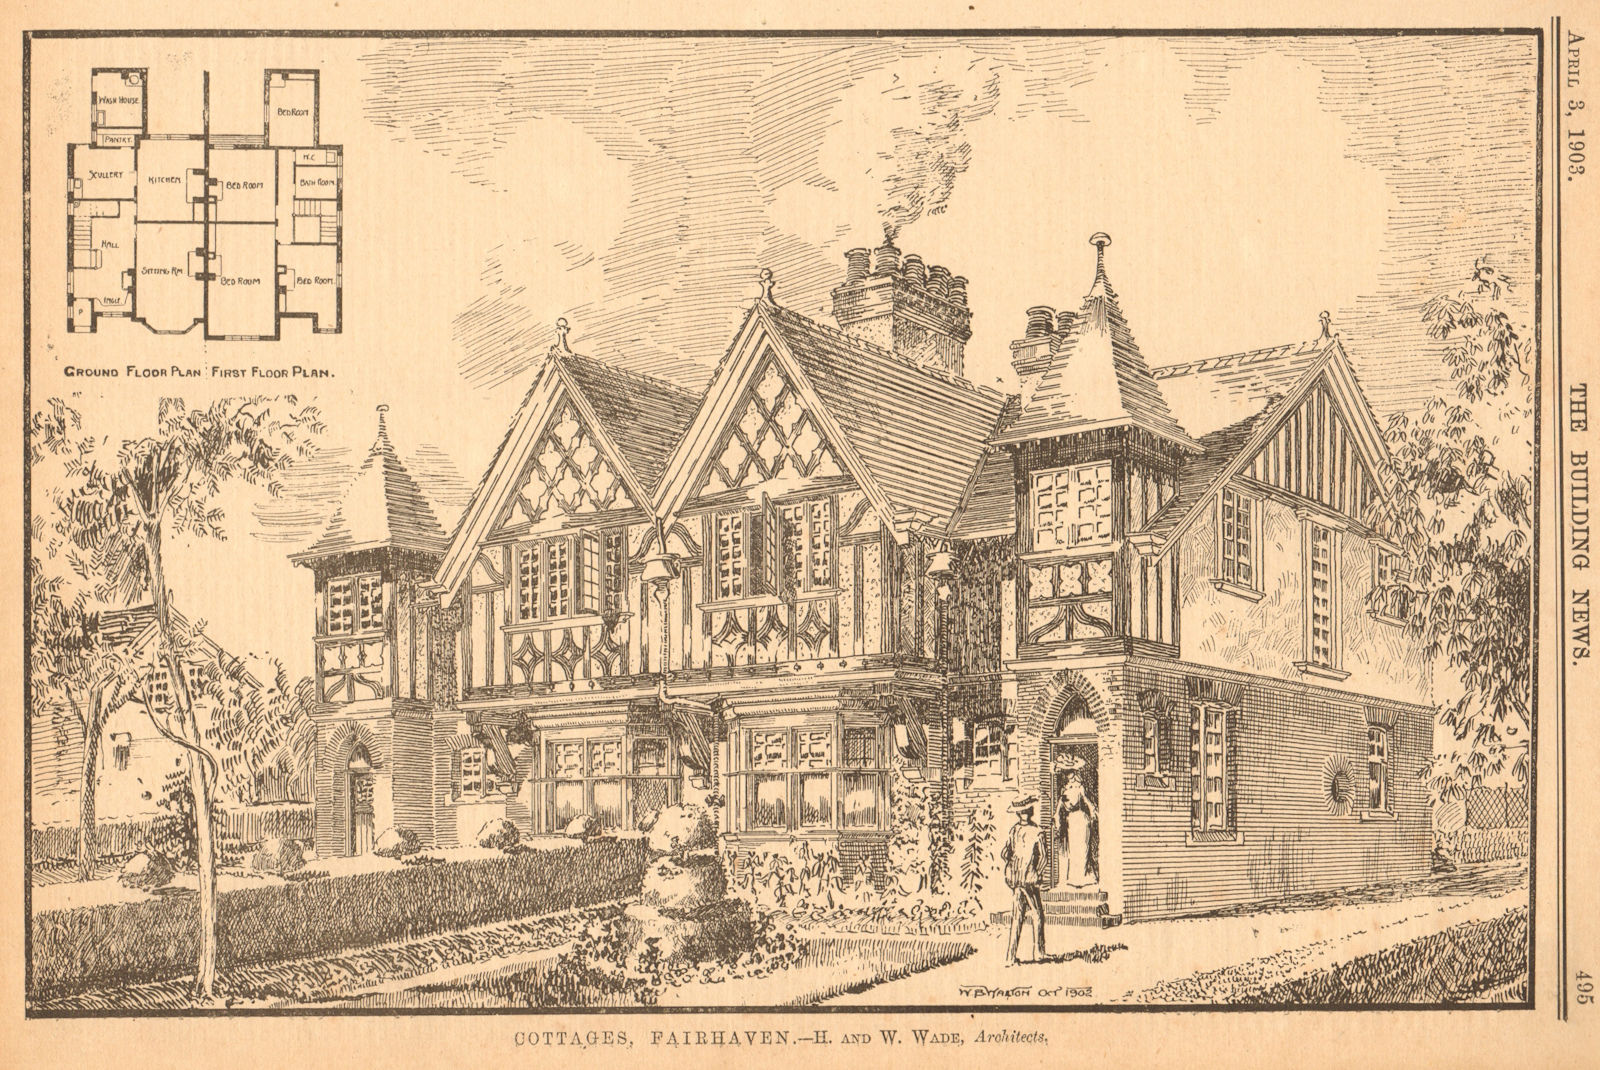 Cottages, Fairhaven - H. & W. Wade, Architects. Floor plan. Lancashire 1903